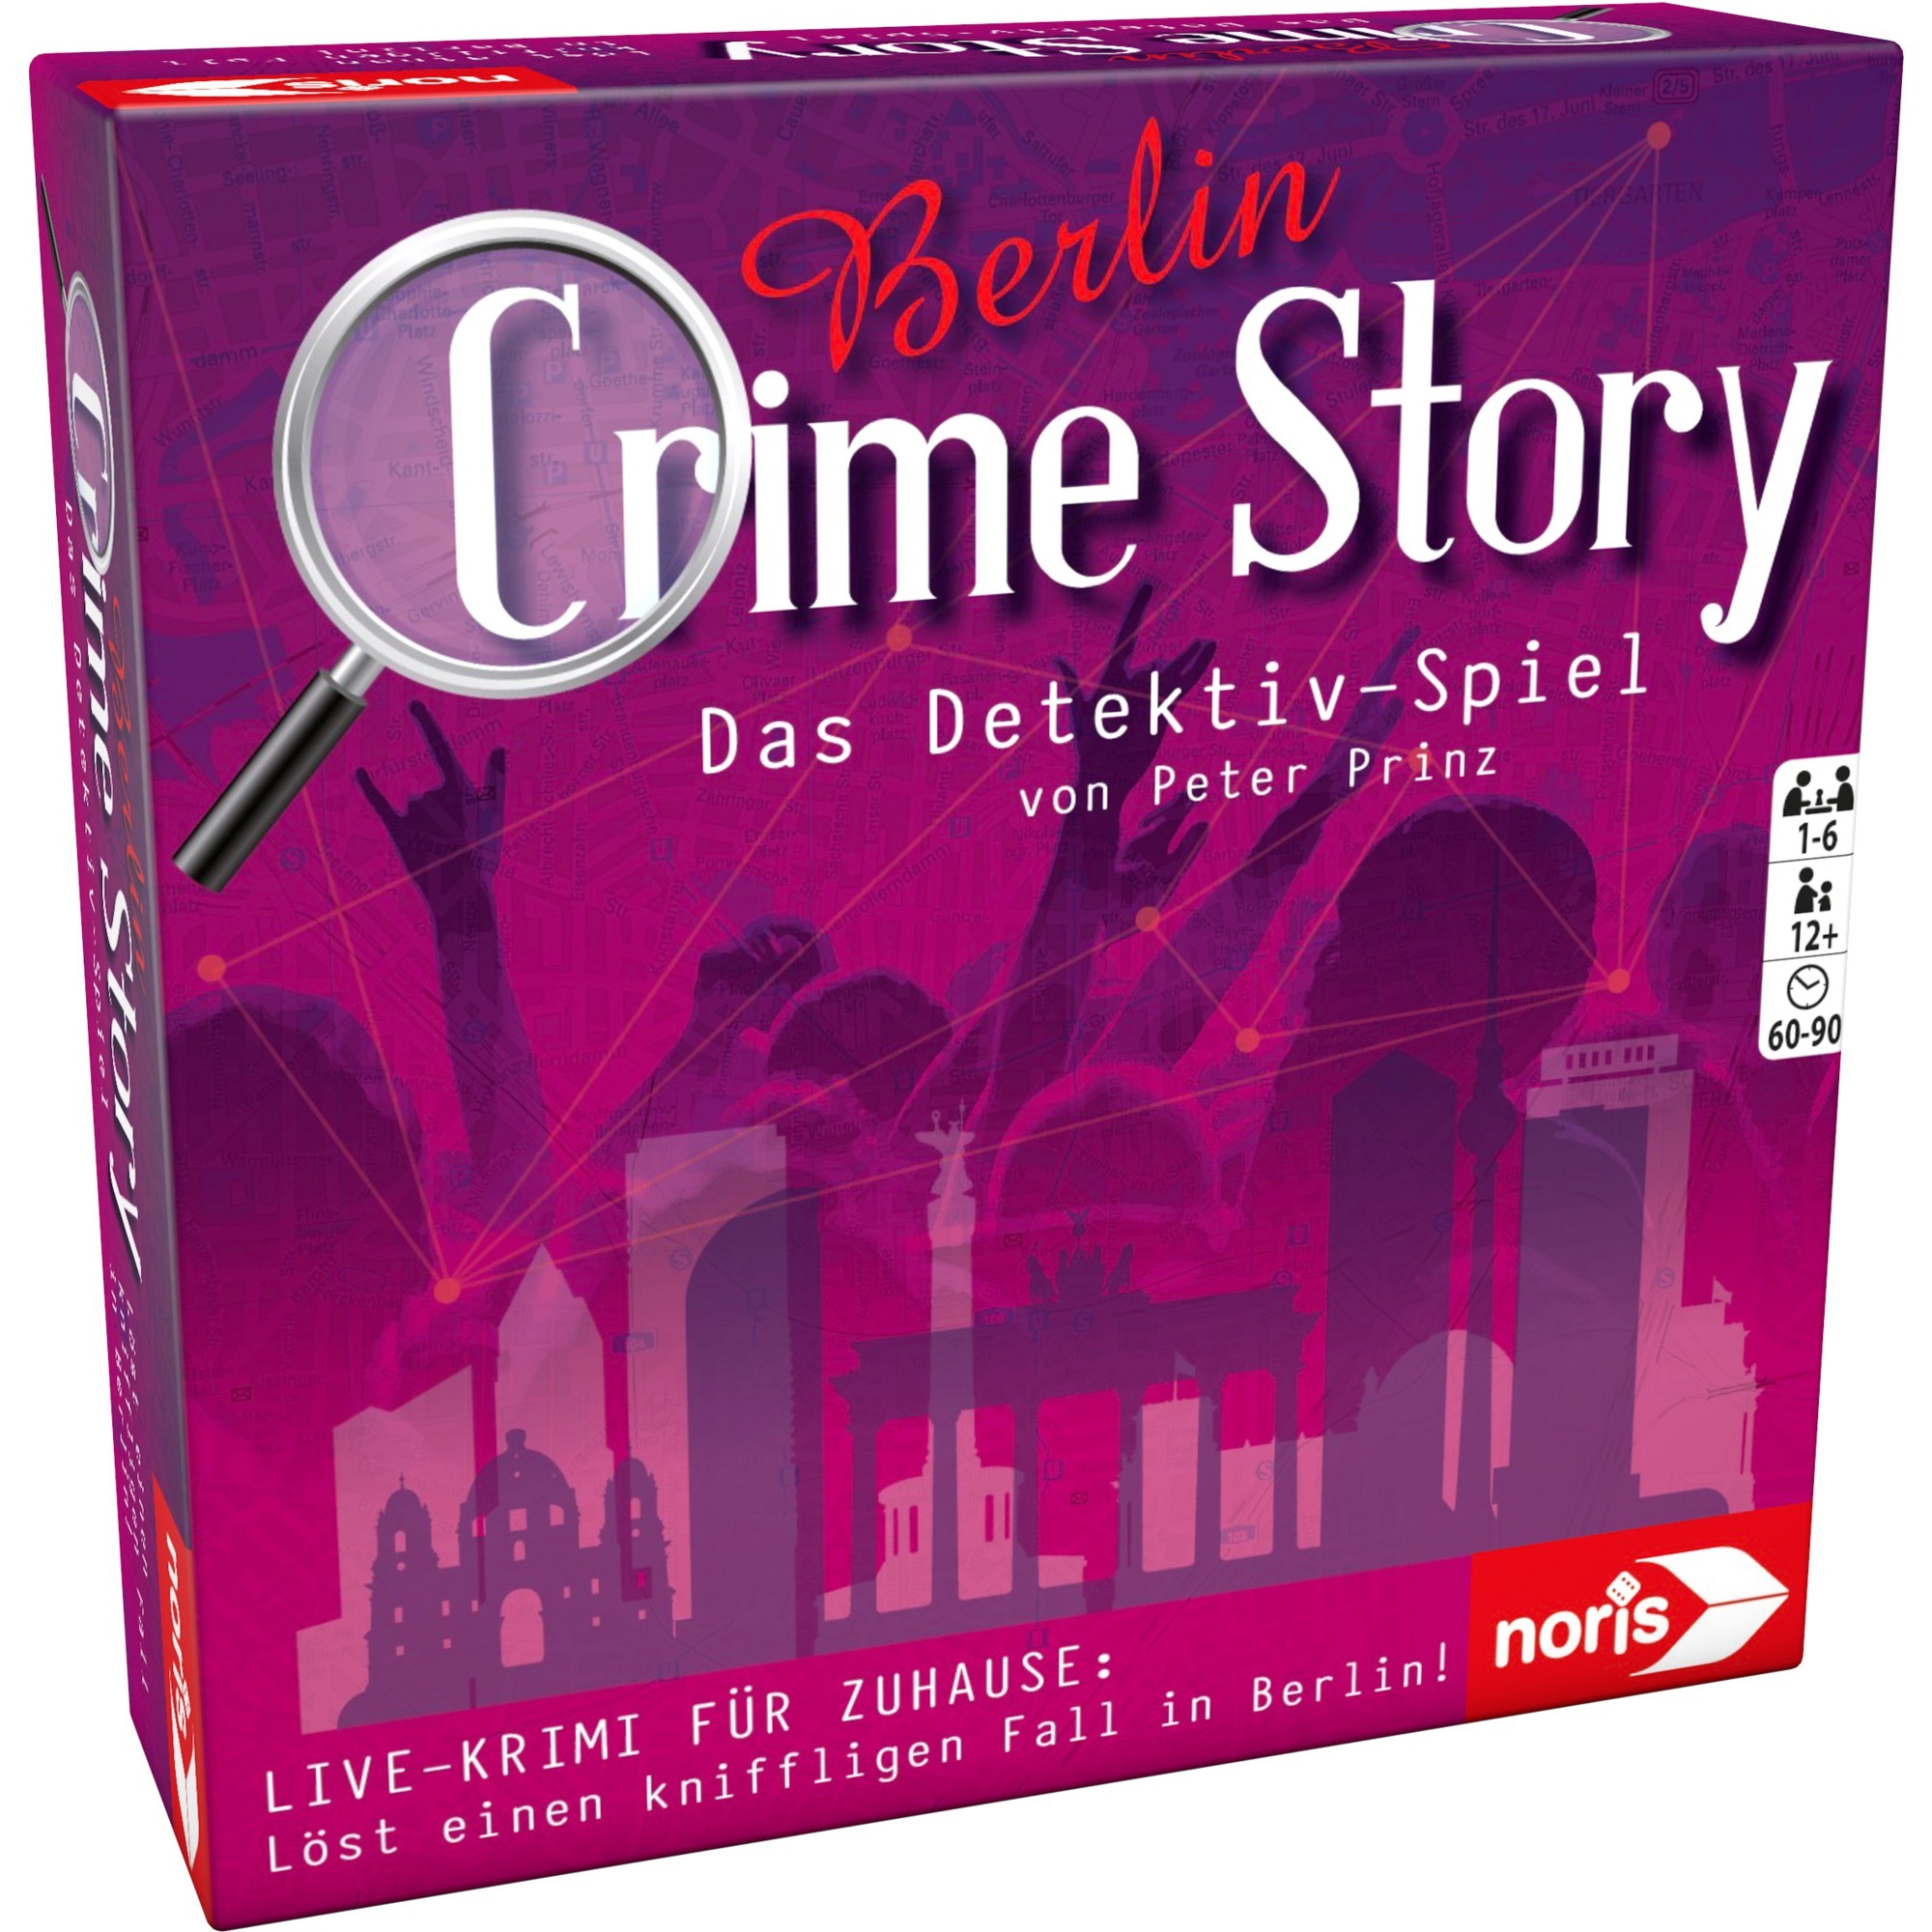 Image of Alternate - Crime Story - Berlin, Partyspiel online einkaufen bei Alternate